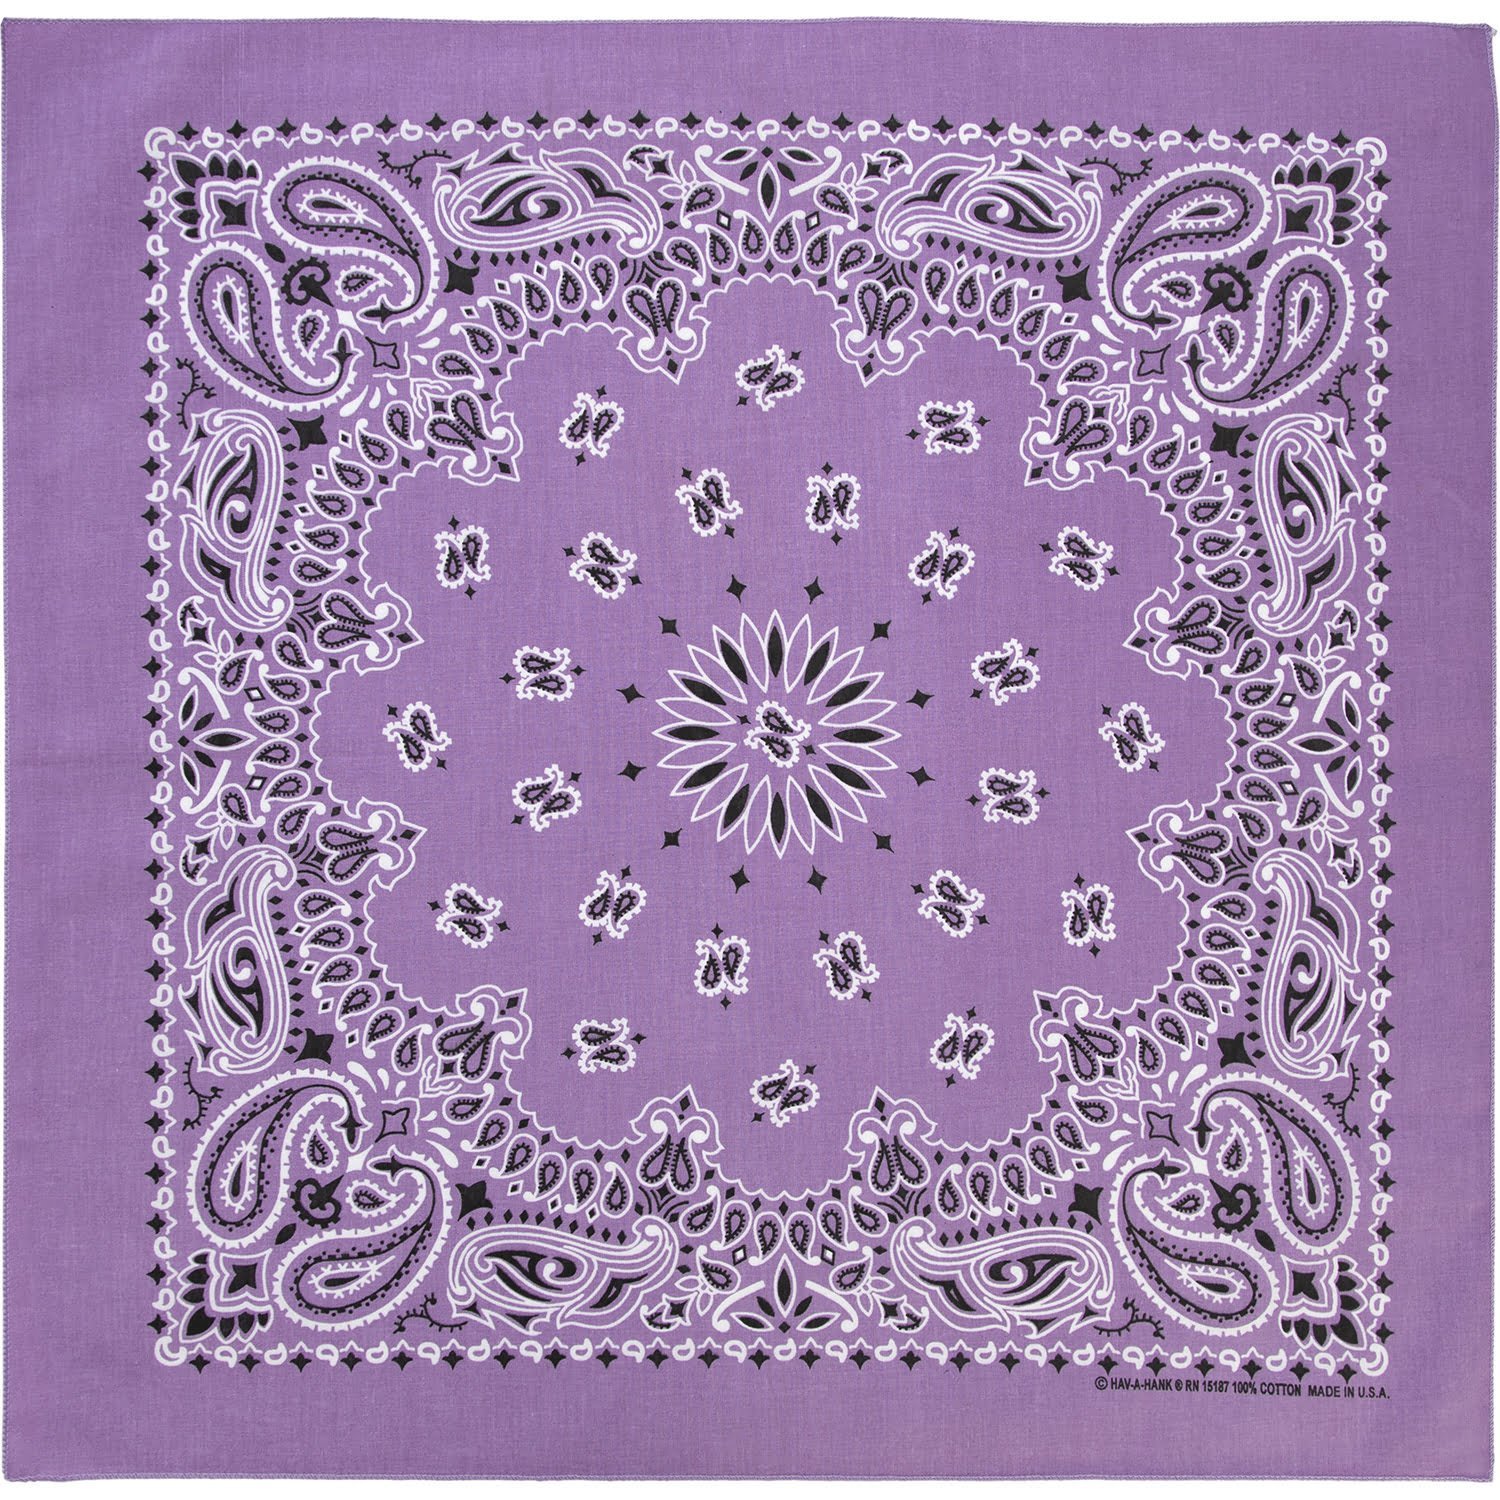 600pcs Lavender Open Center Paisley Handkerchiefs - USA - 100% cotton